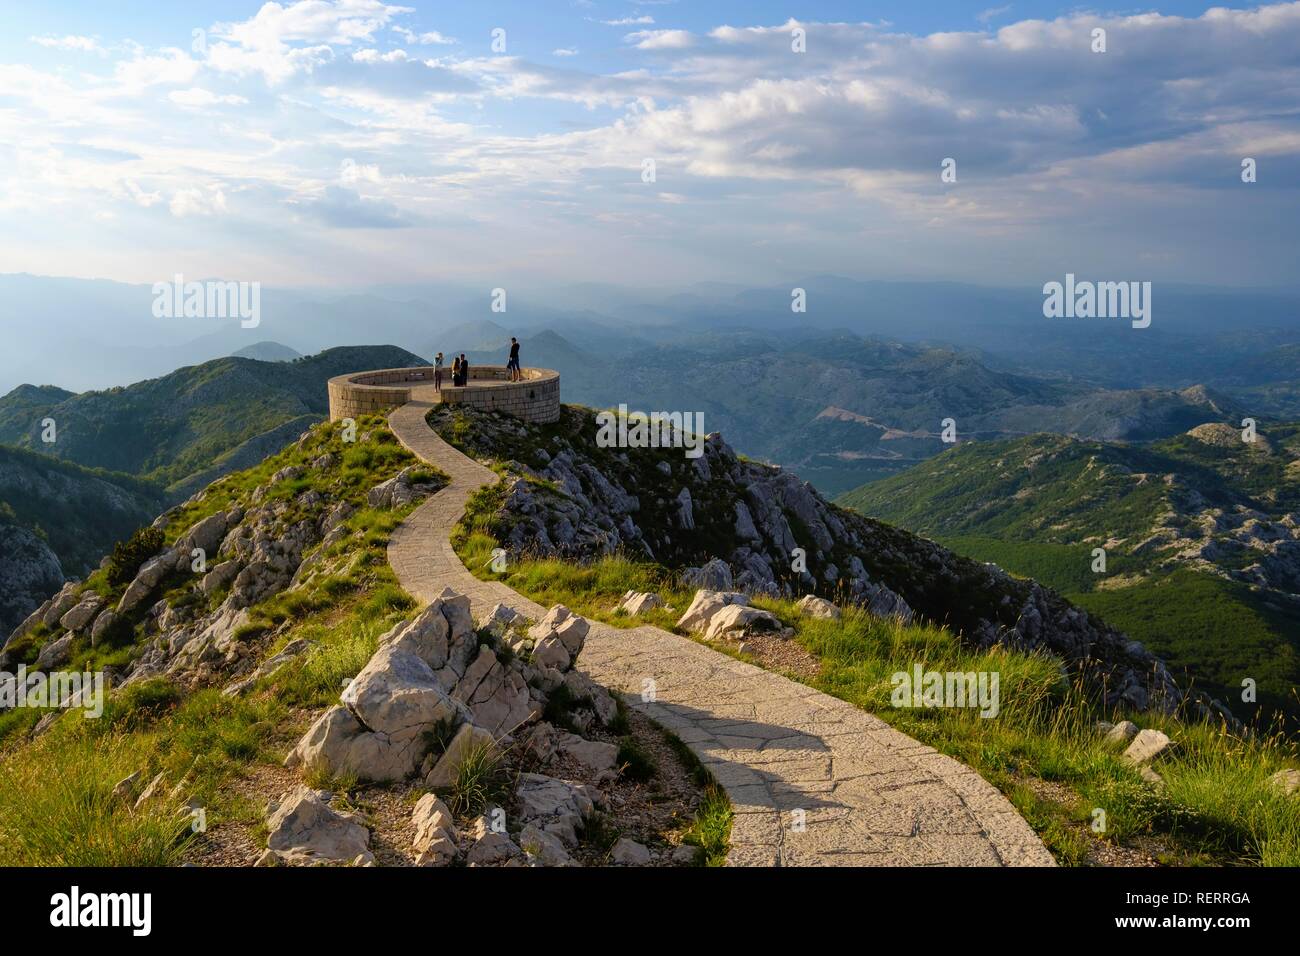 Viewing platform on Jezerski Vrh, Lovcen National Park, near Cetinje, Montenegro Stock Photo